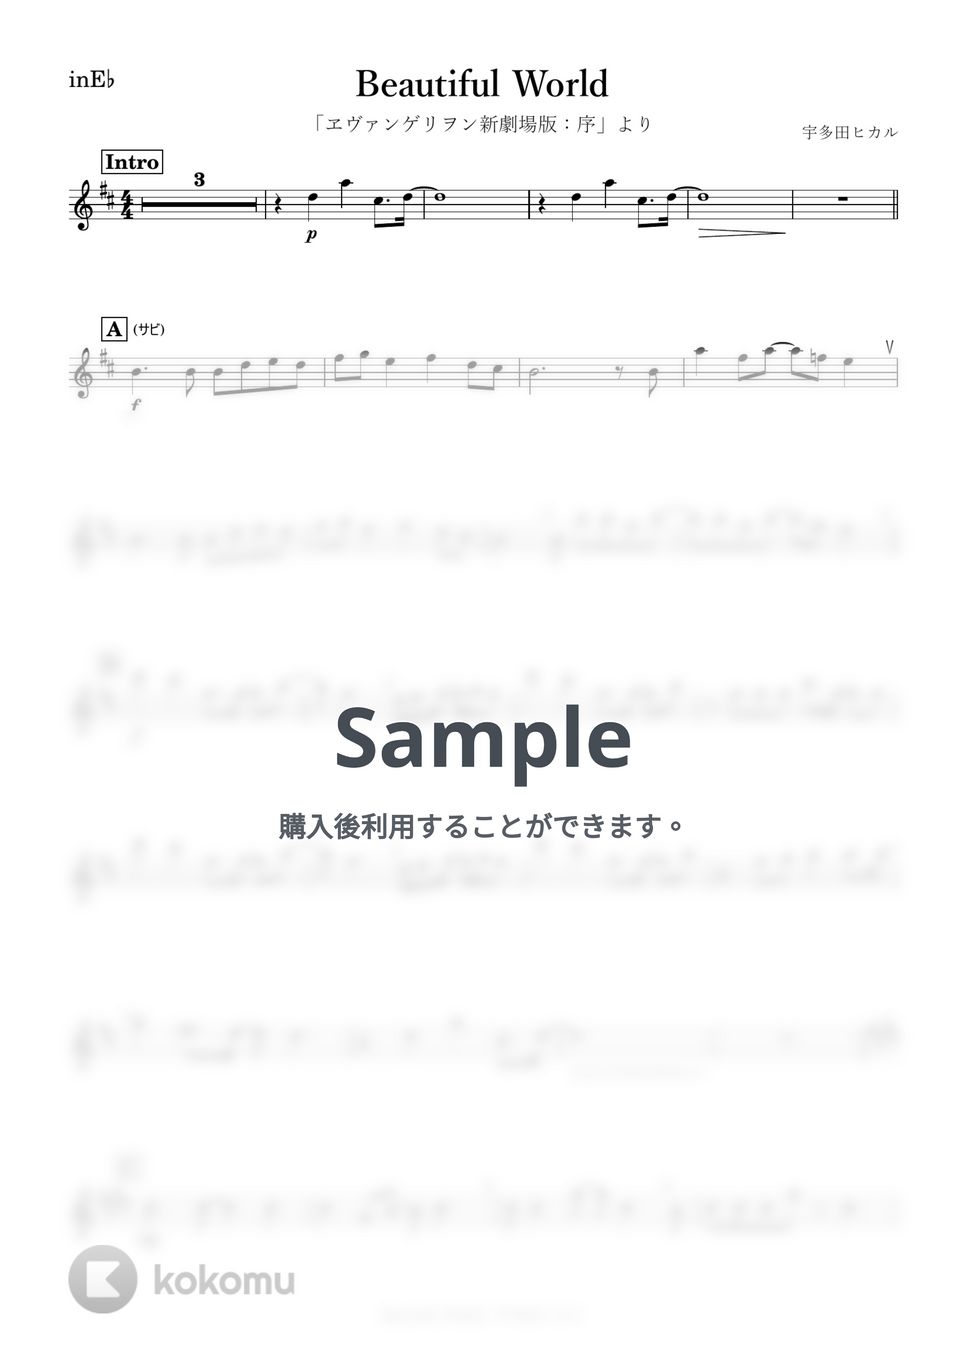 宇多田ヒカル - Beautiful World (E♭) by kanamusic